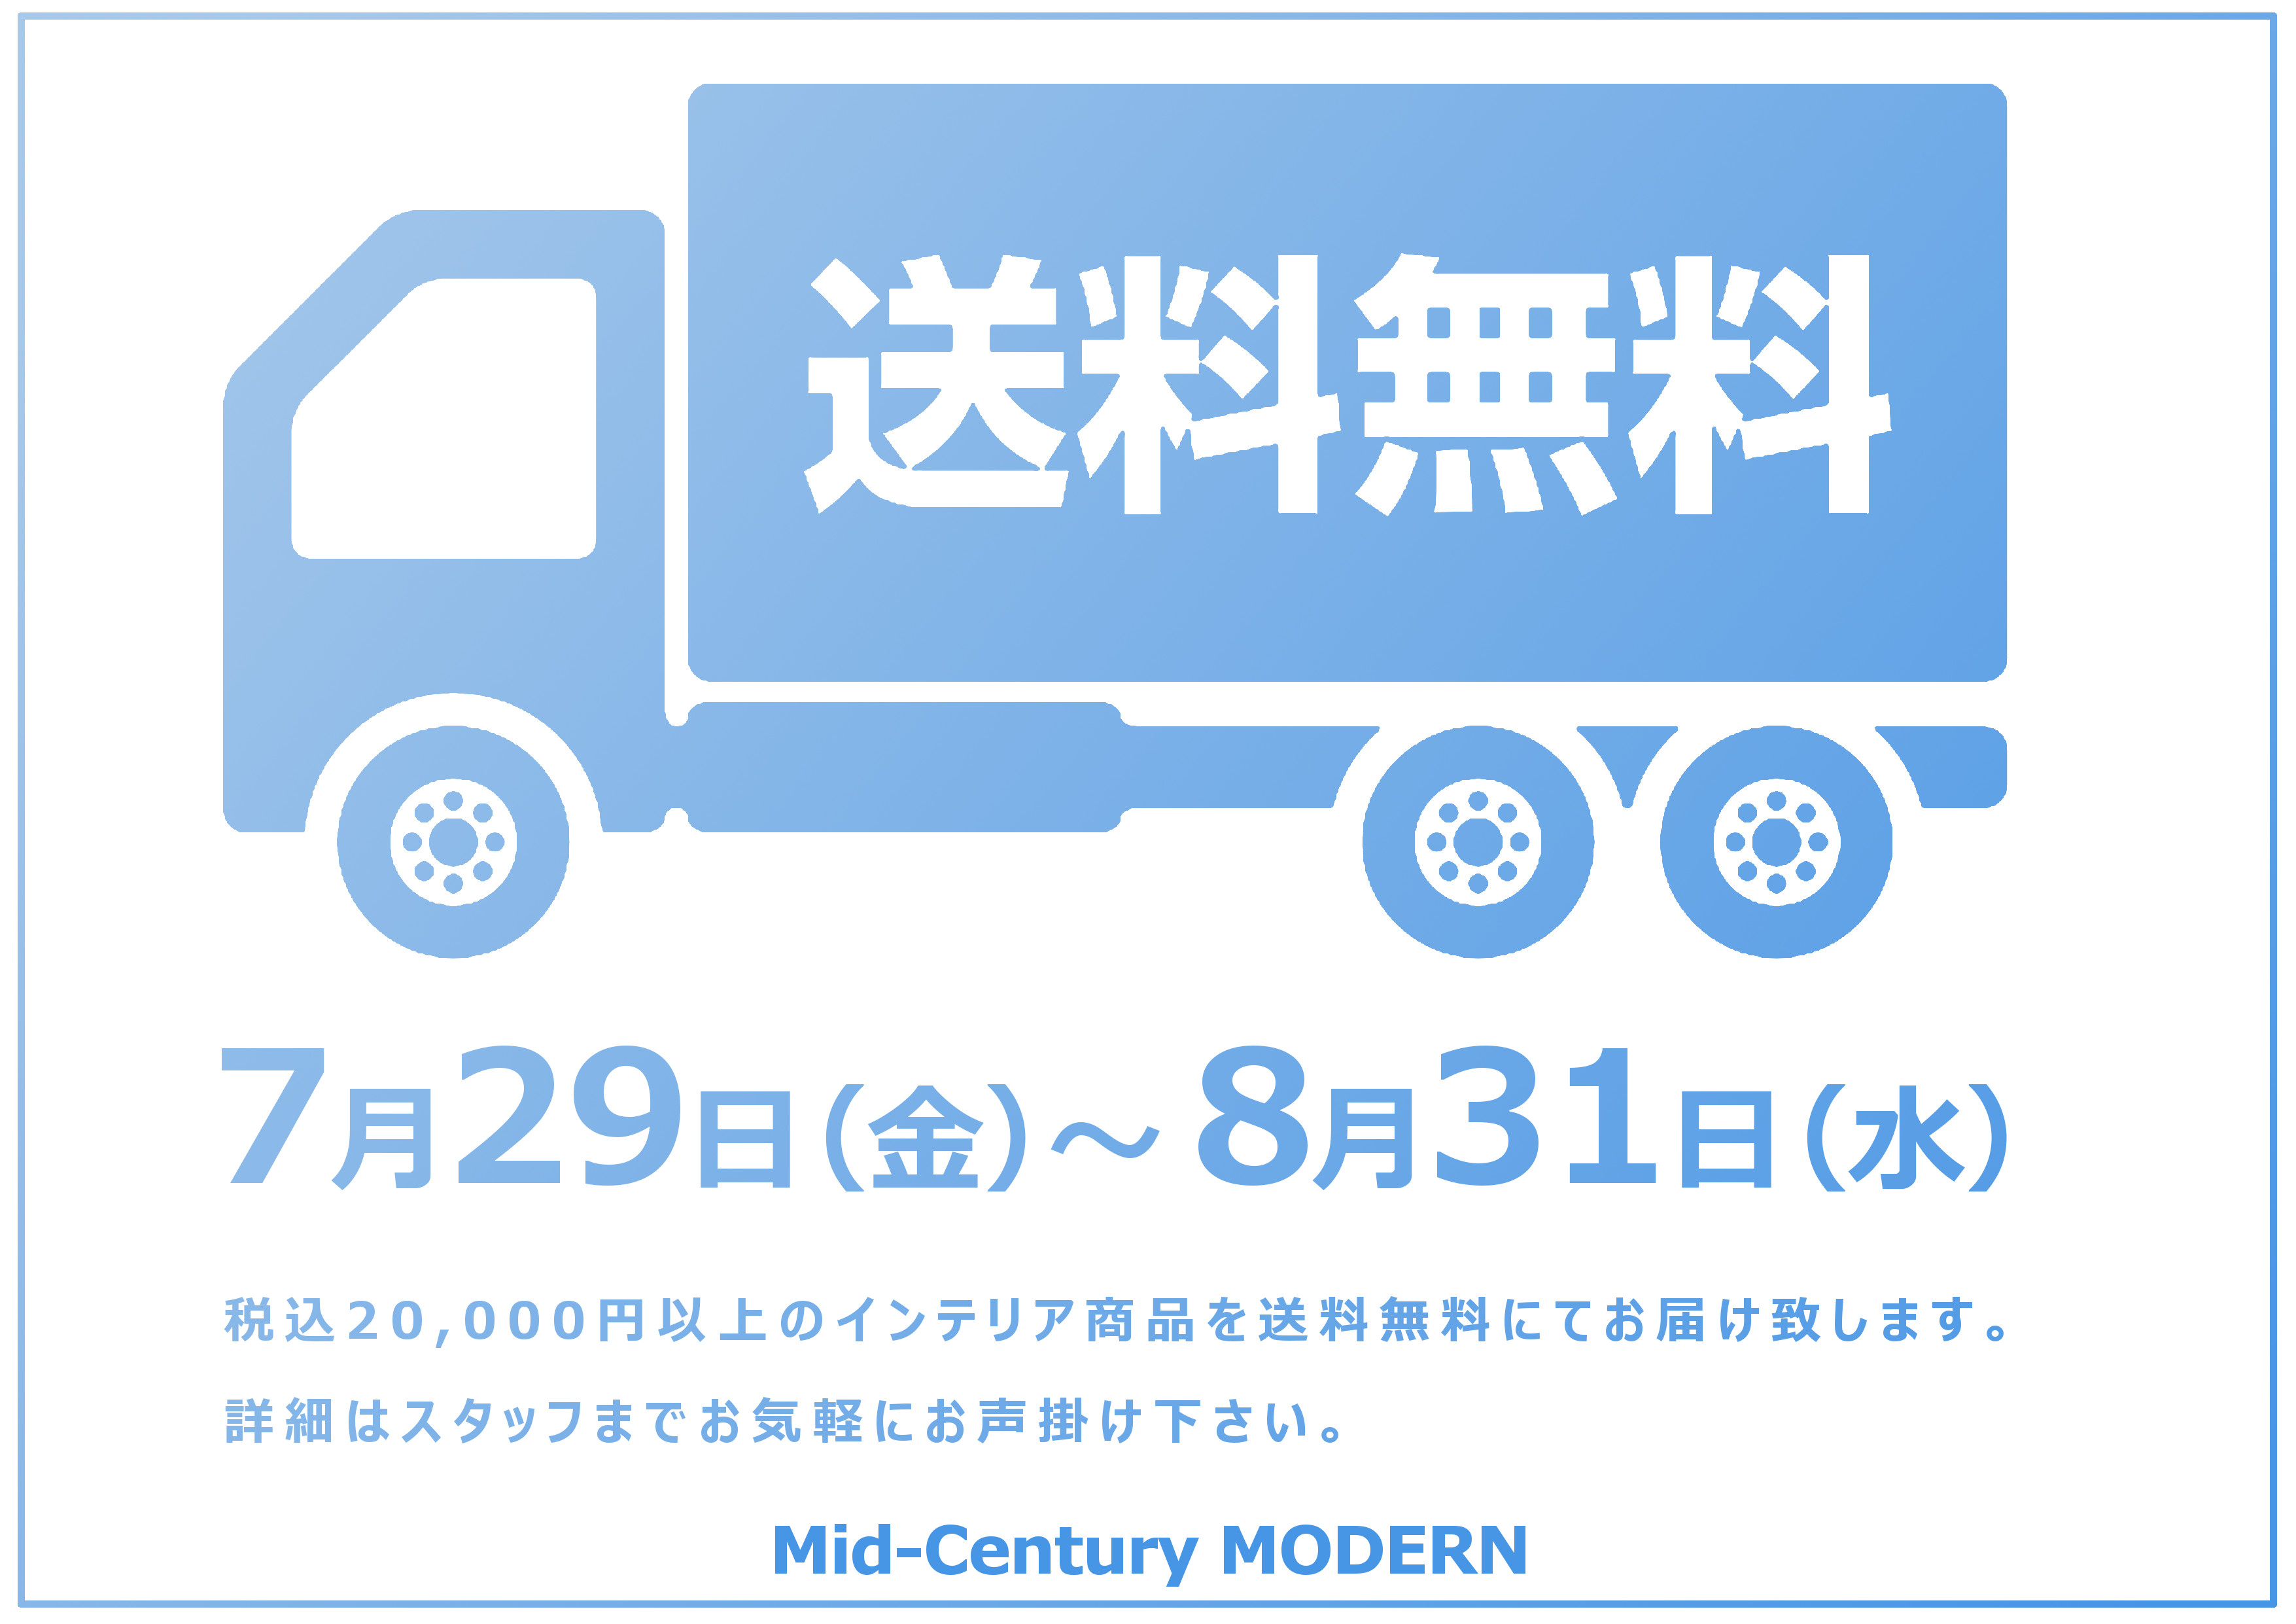 Mid-Century MODERN Blog 本日より開催「夏の送料無料キャンペーン」